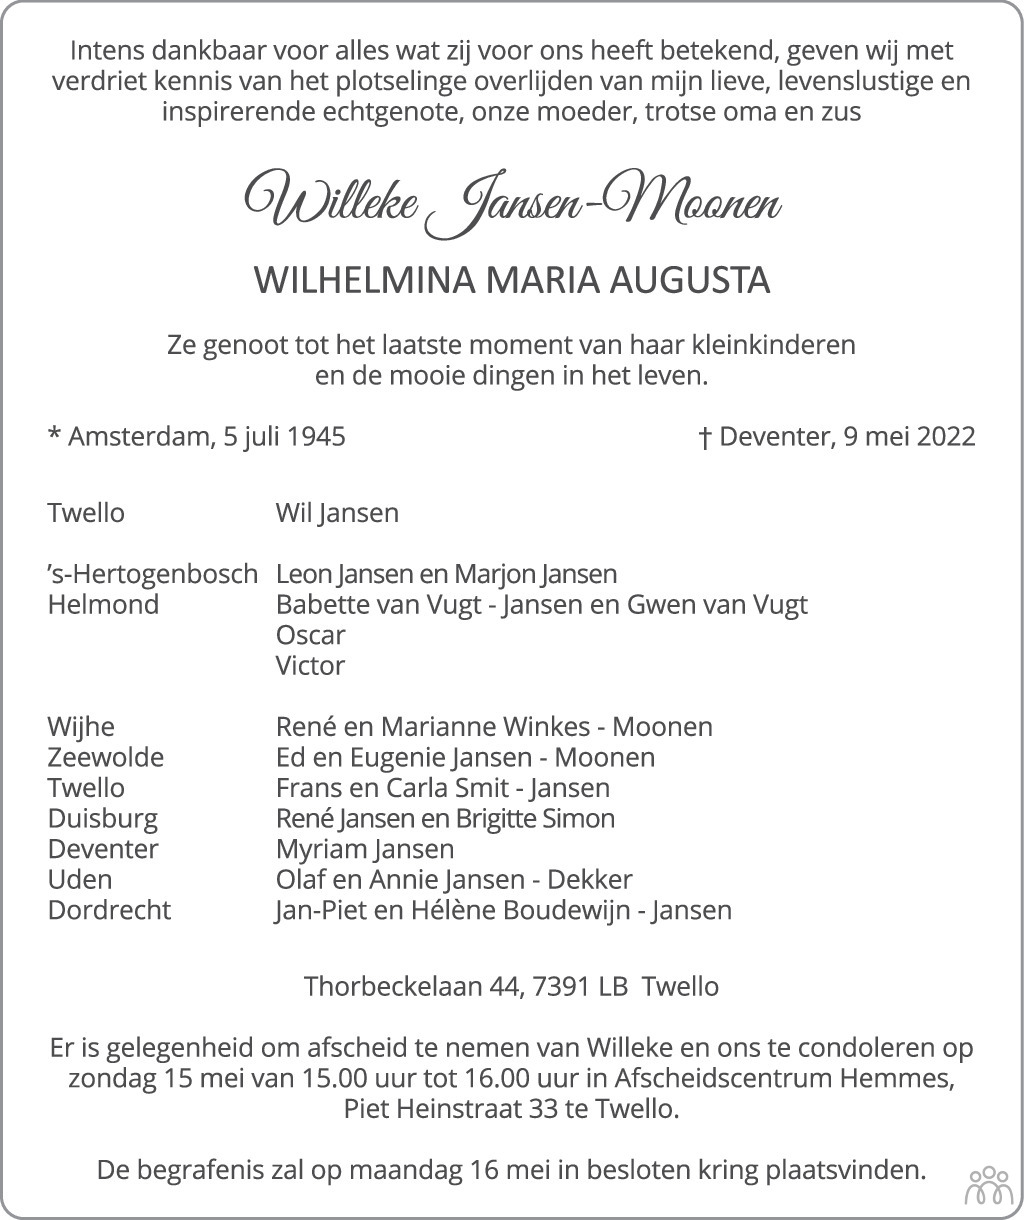 Overlijdensbericht van Willeke (Wilhelmina Maria Augusta) Jansen-Moonen in de Stentor